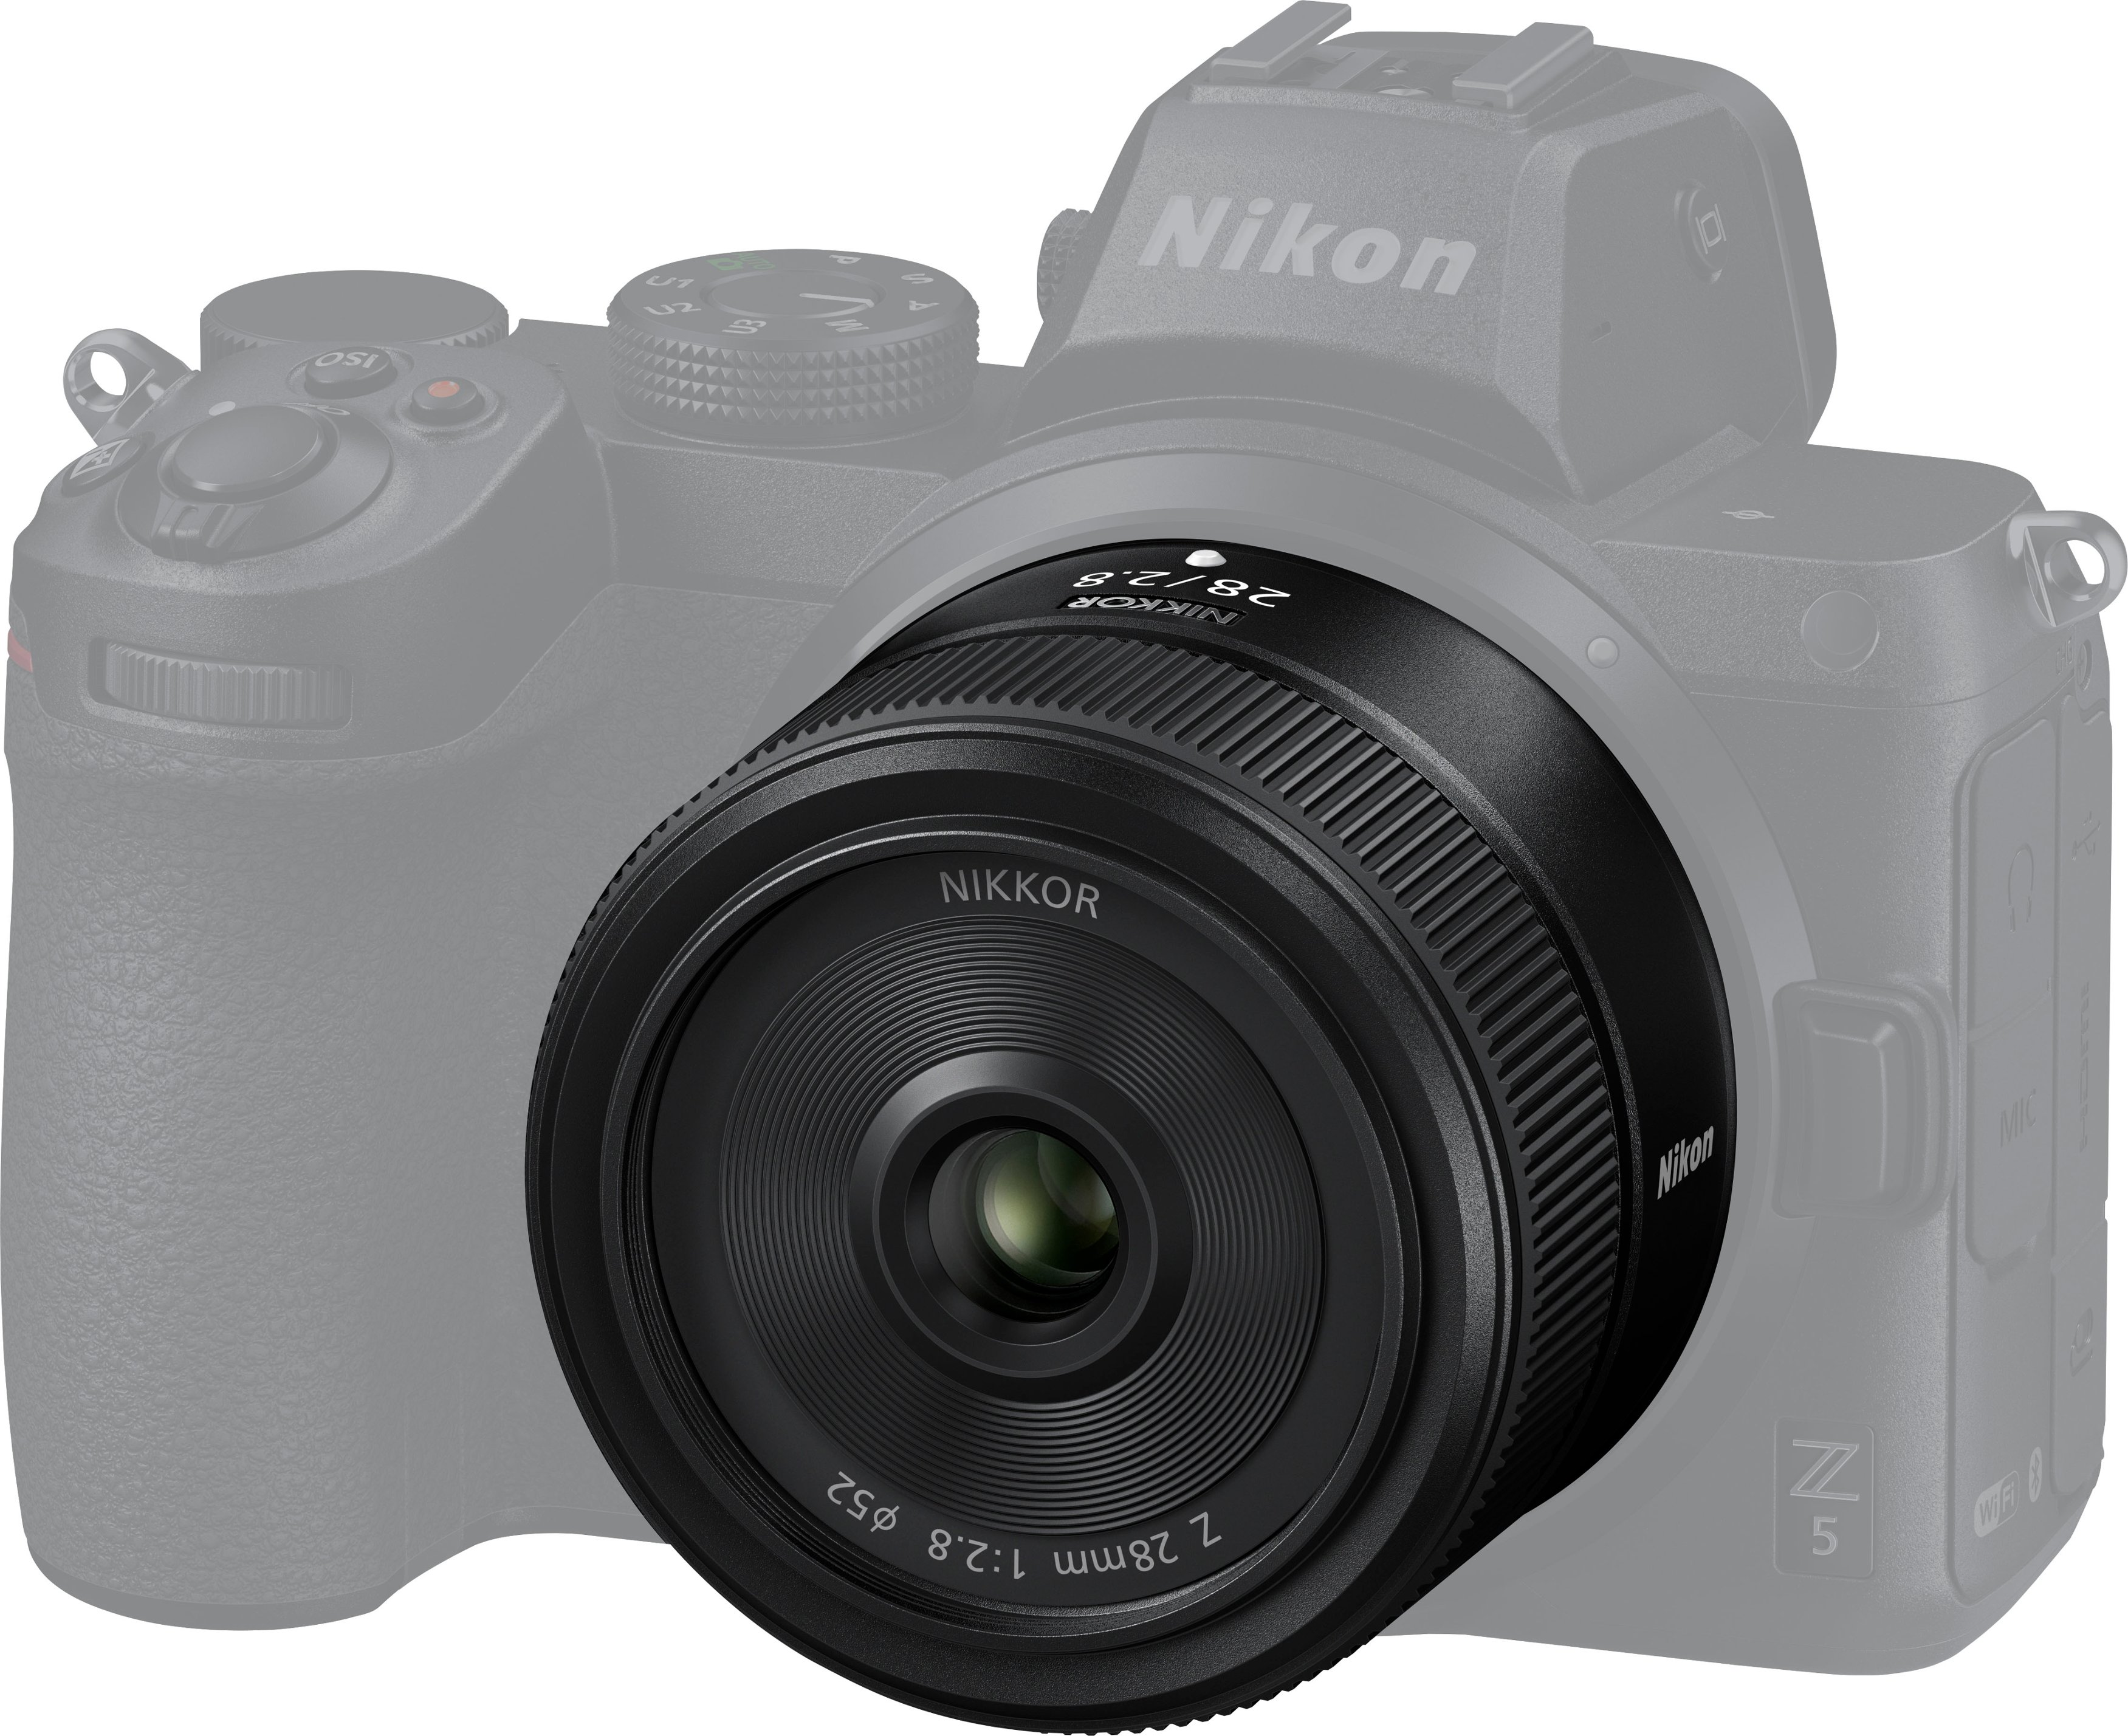 NIKKOR Z 28mm f/2.8 Standard Prime Lens for Nikon Z Cameras Black